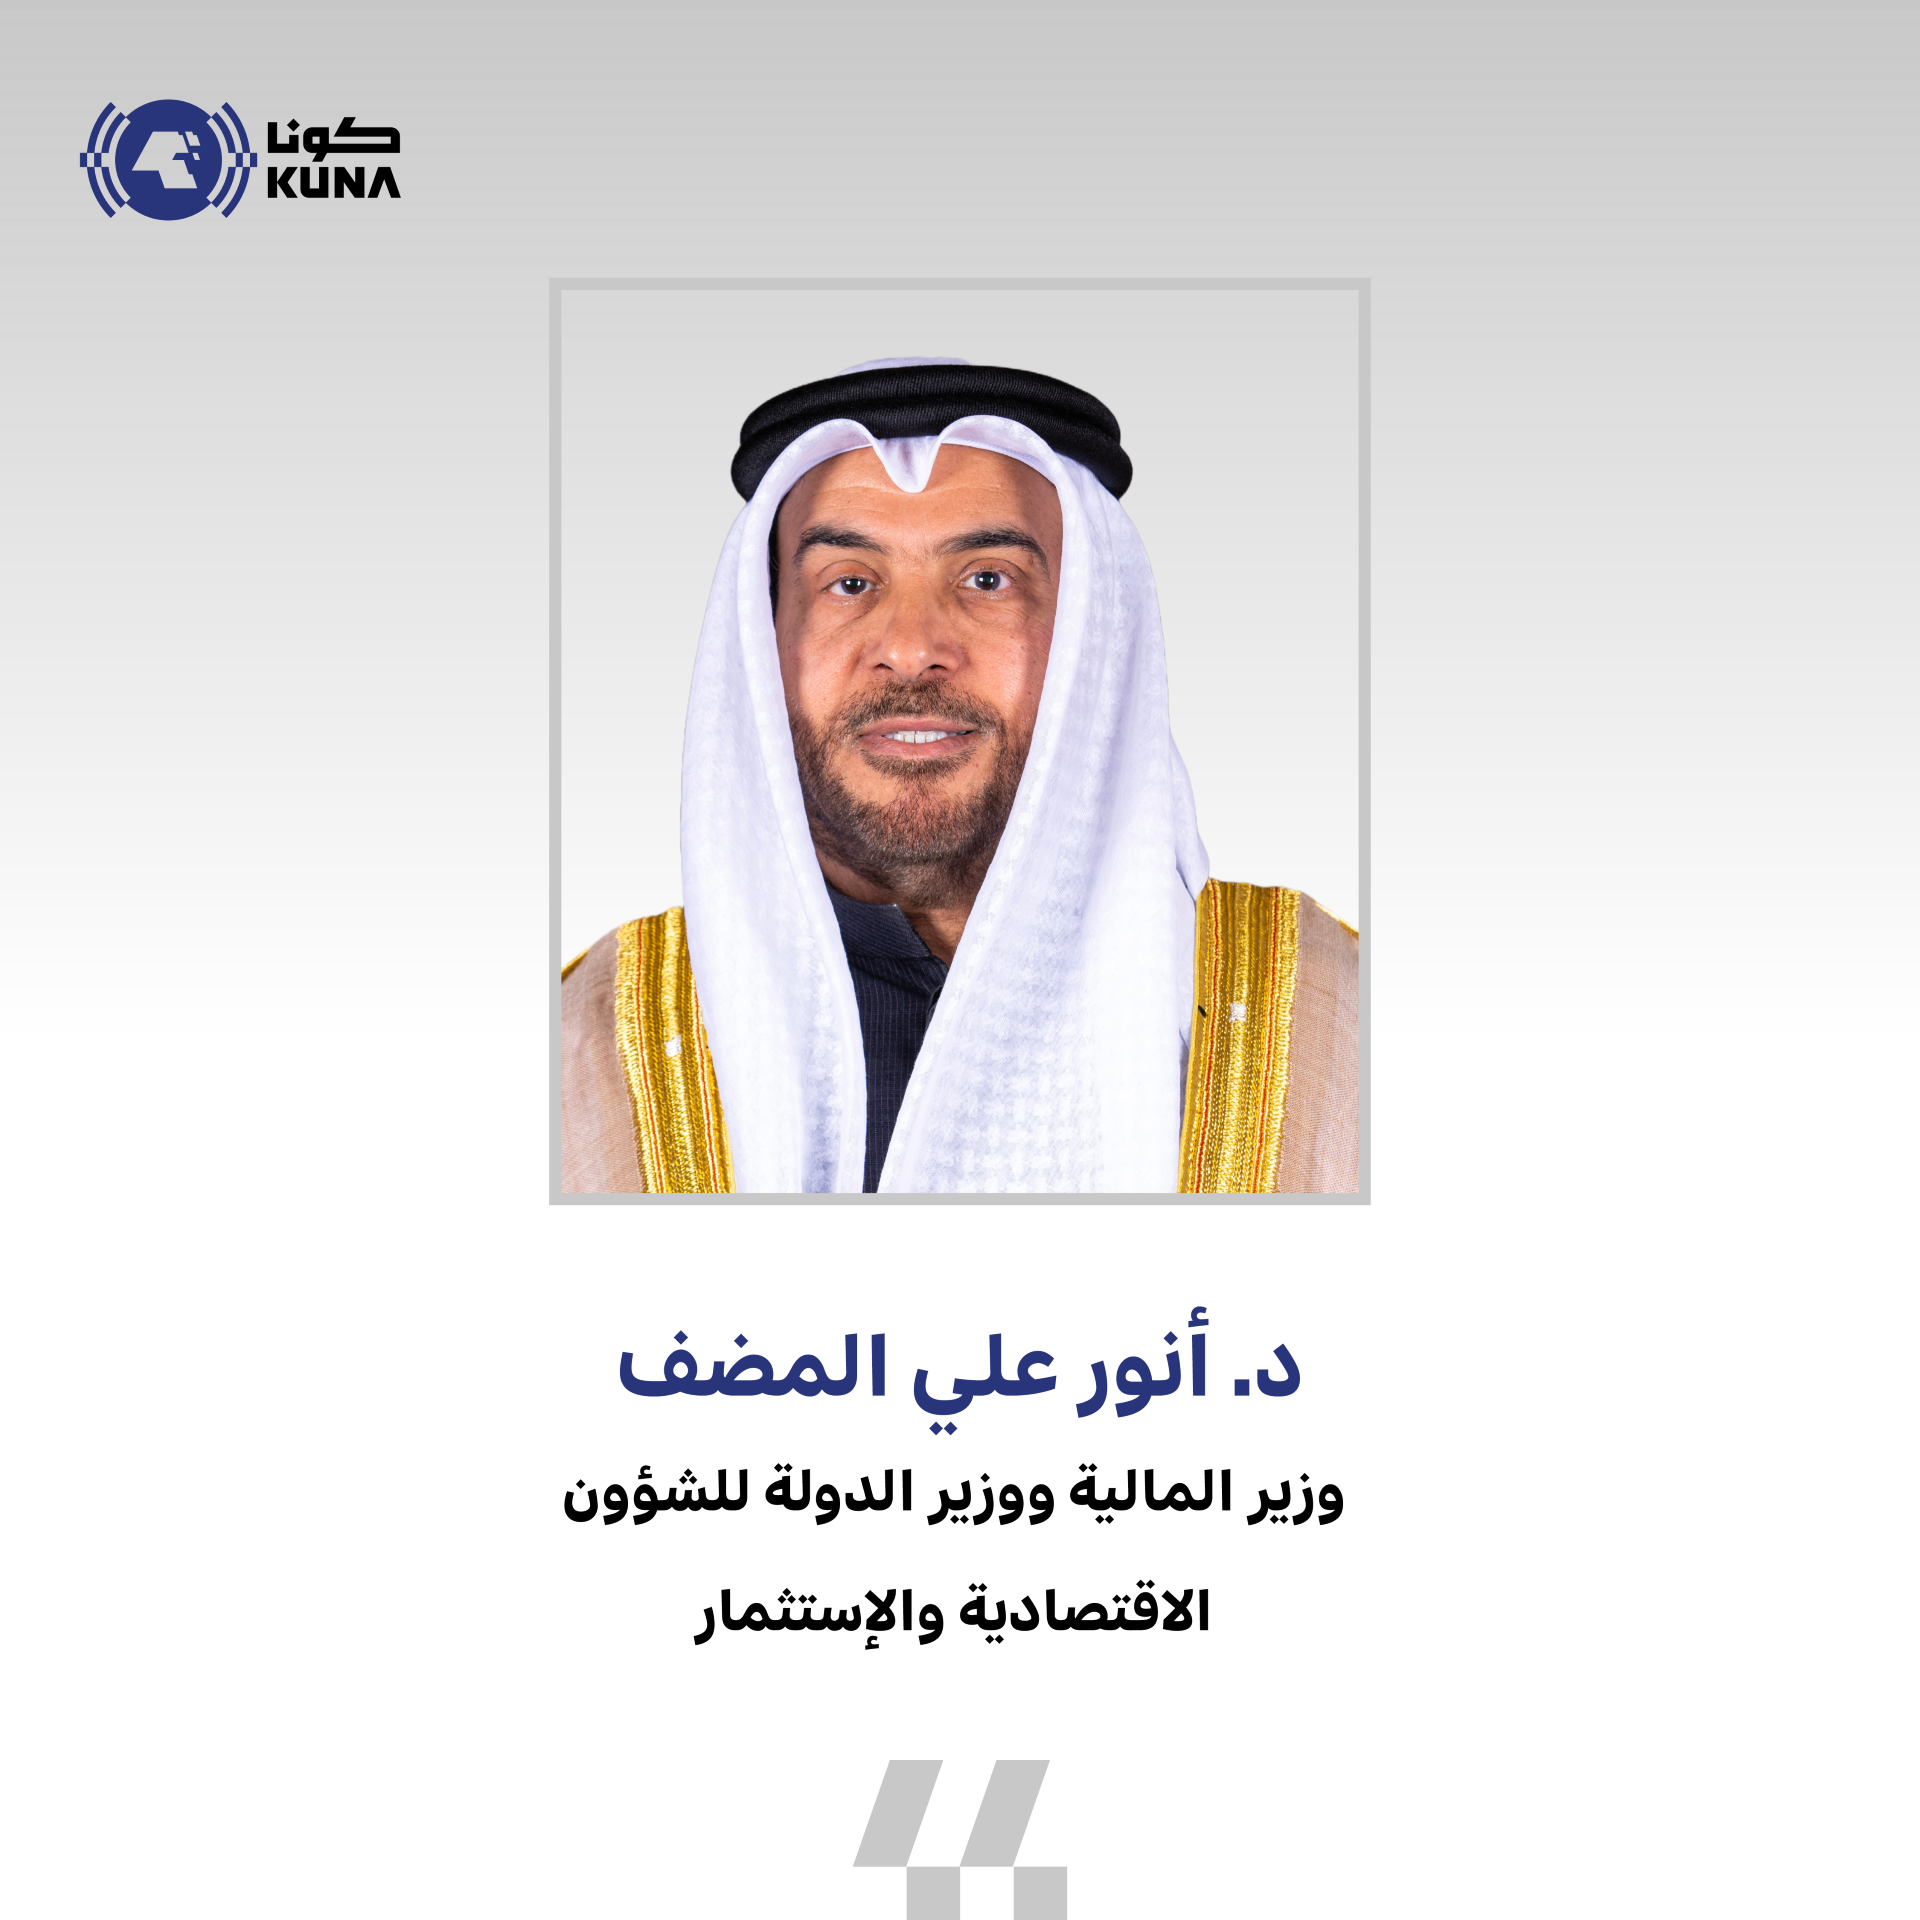 وزير المالية: لا اقتراض للحكومة دون وجود قانون وفقا لنصوص الدستور الكويتي                                                                                                                                                                                 